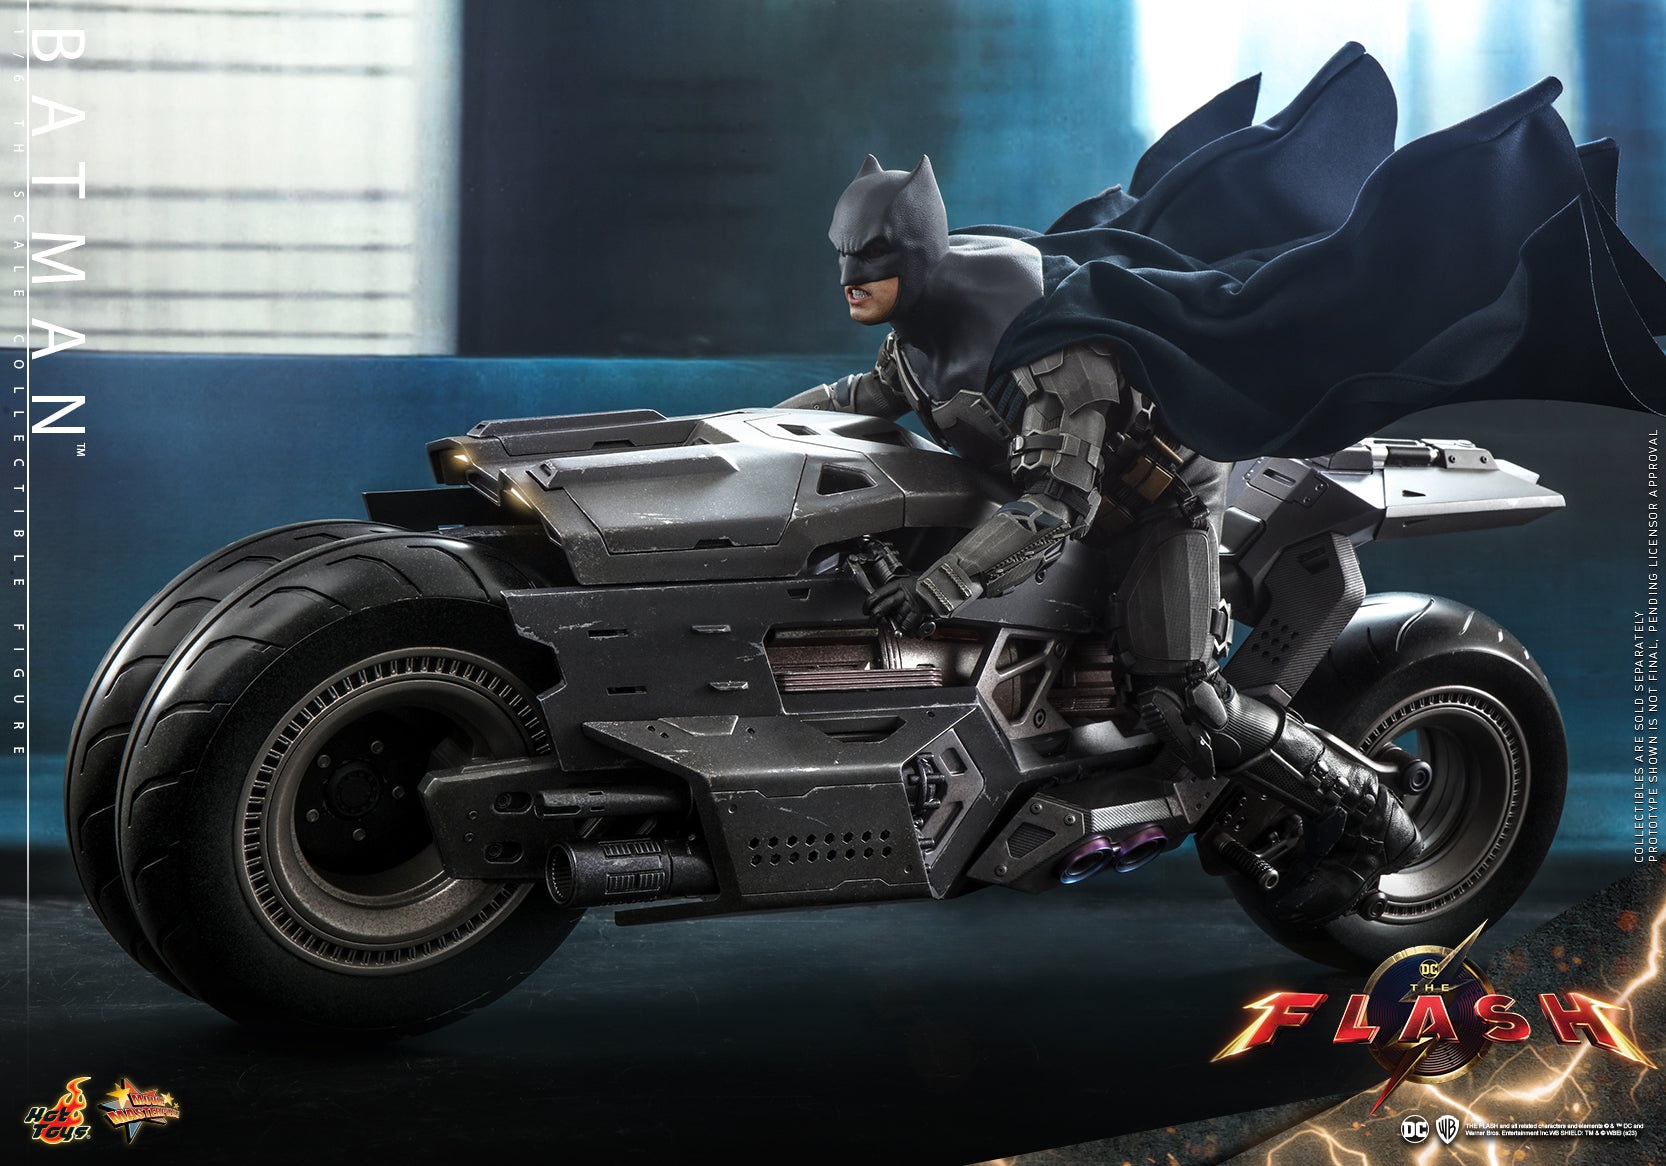 Hot Toys - MMS703 - The Flash - Batman - Marvelous Toys